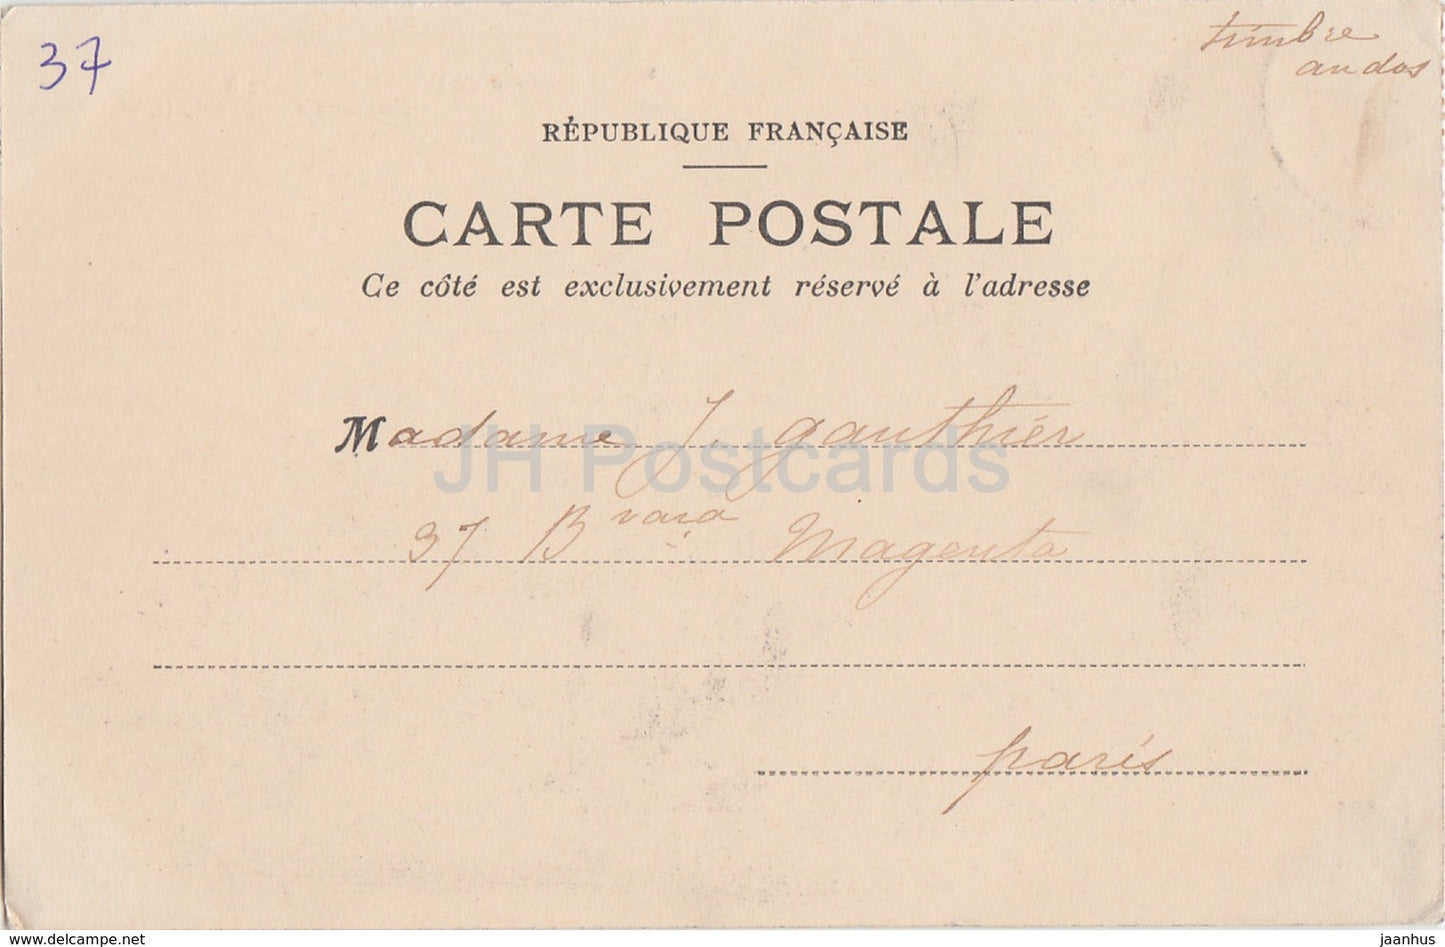 Commune de Nouzilly - Château de l'Orfraisière - château - carte postale ancienne - France - occasion